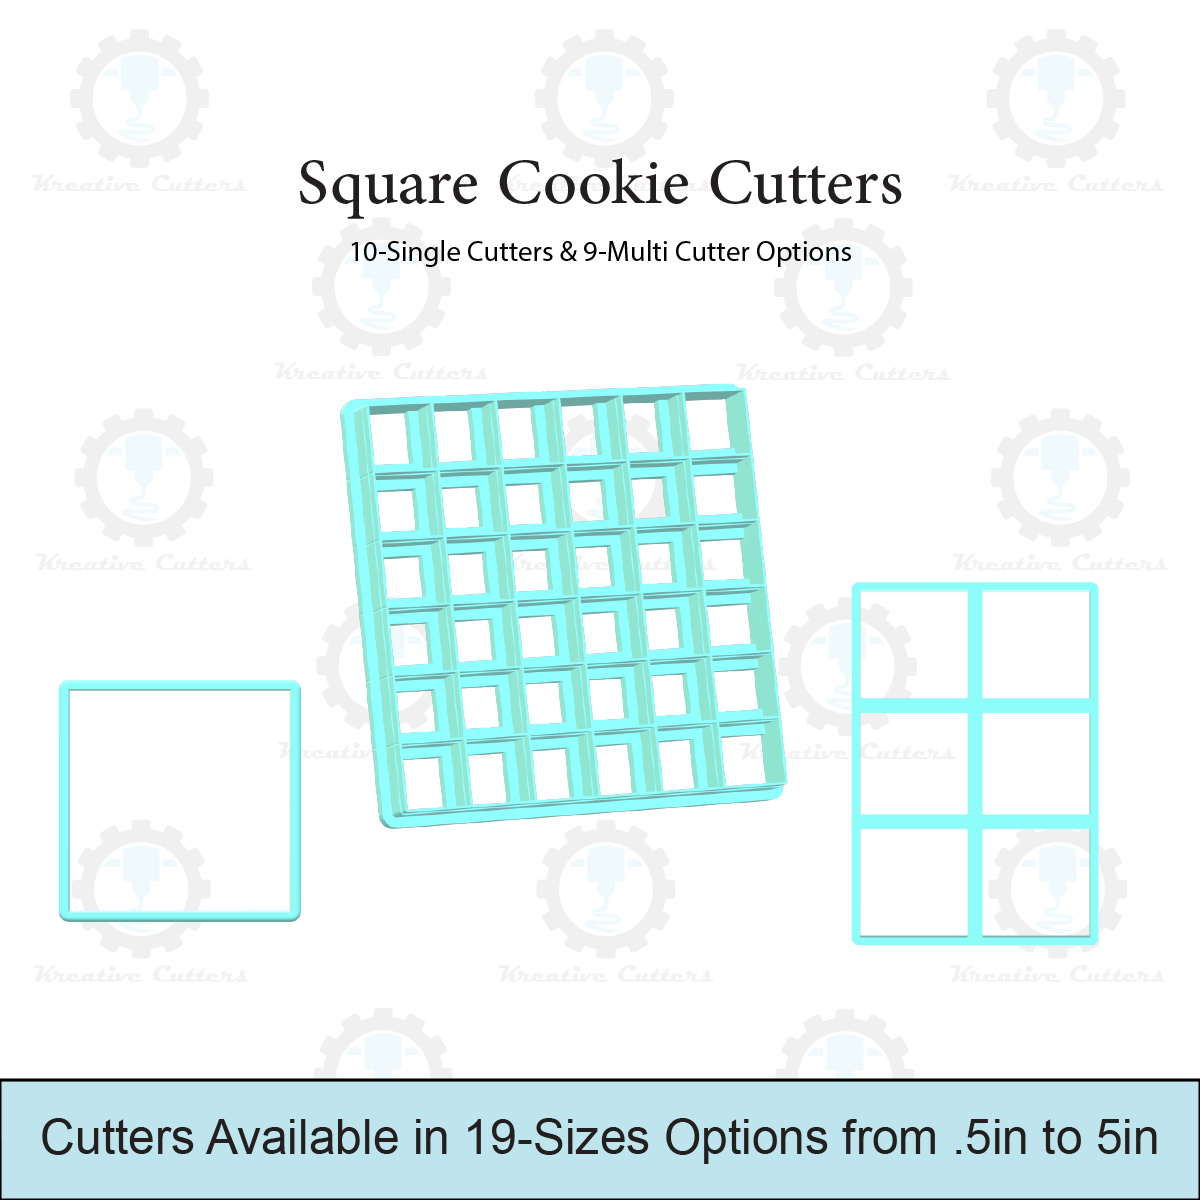 Square Cookie Cutters | 10-Single Cutters & 9-Multi Cutter Options